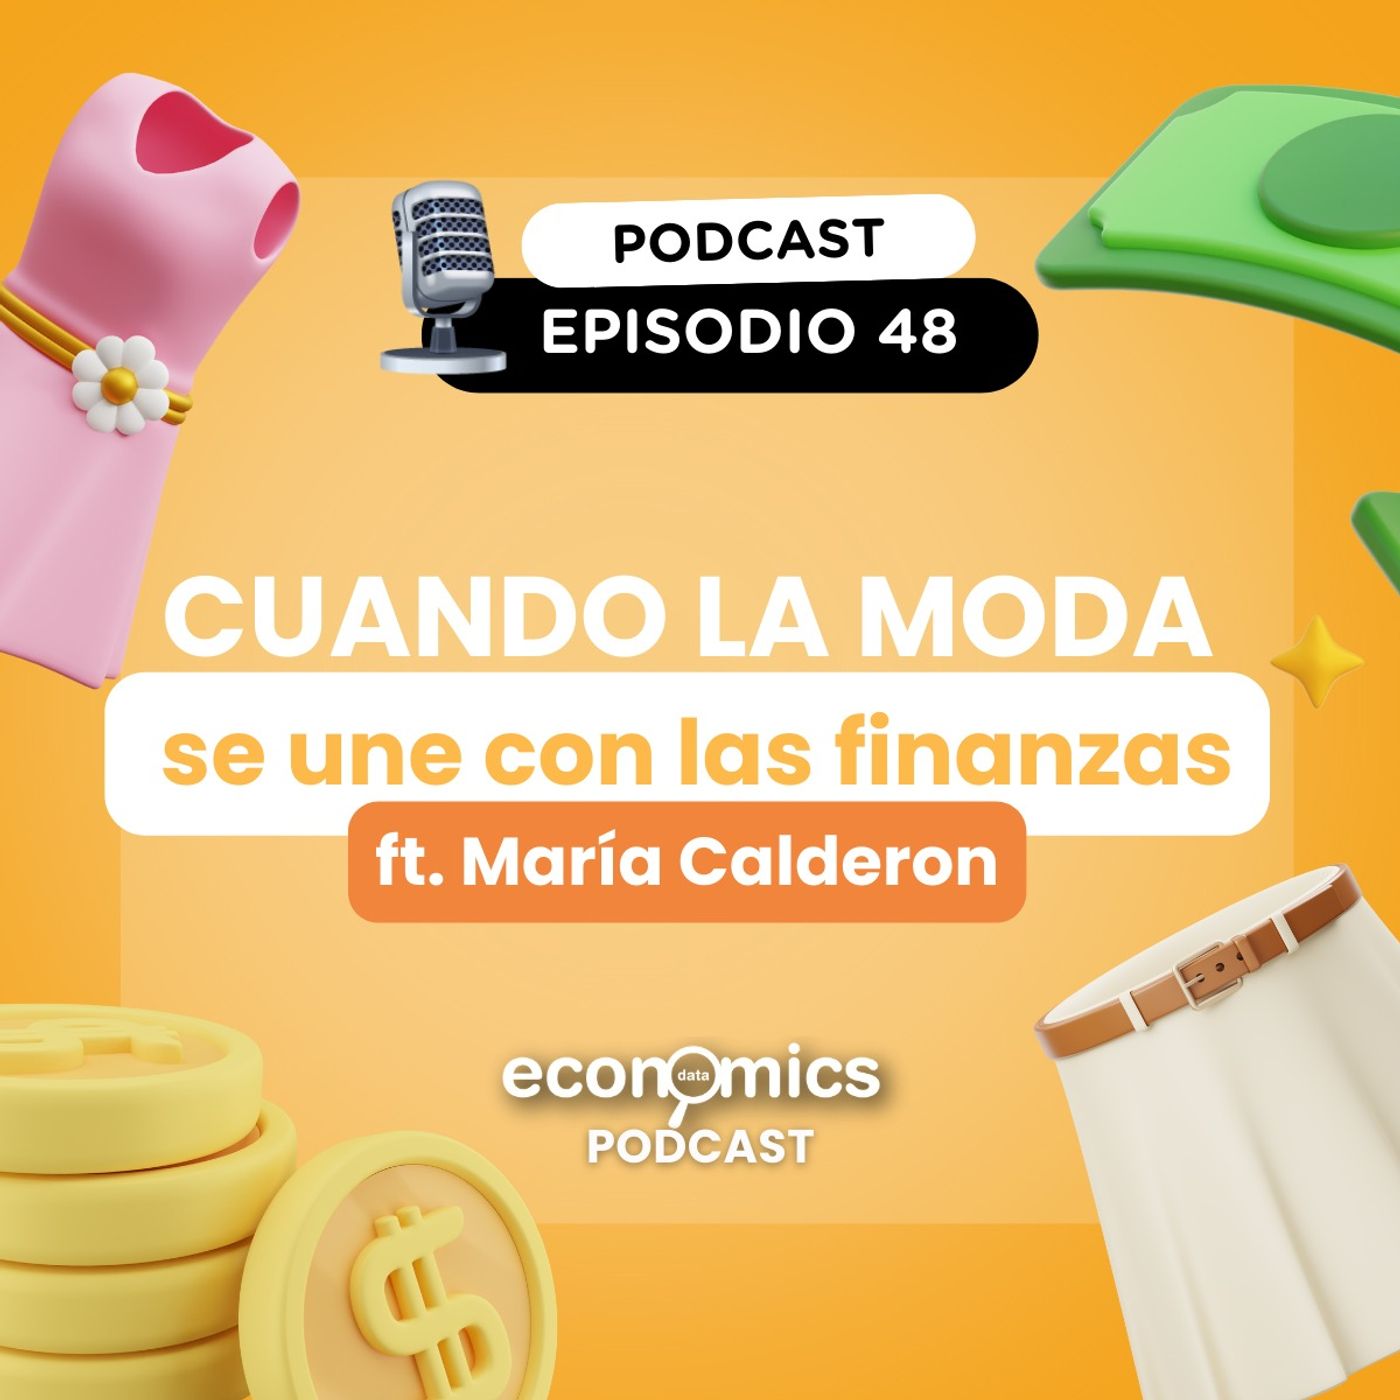 EP 48 - Cuando la moda se une con las finanzas 😳 ft. María Calderon